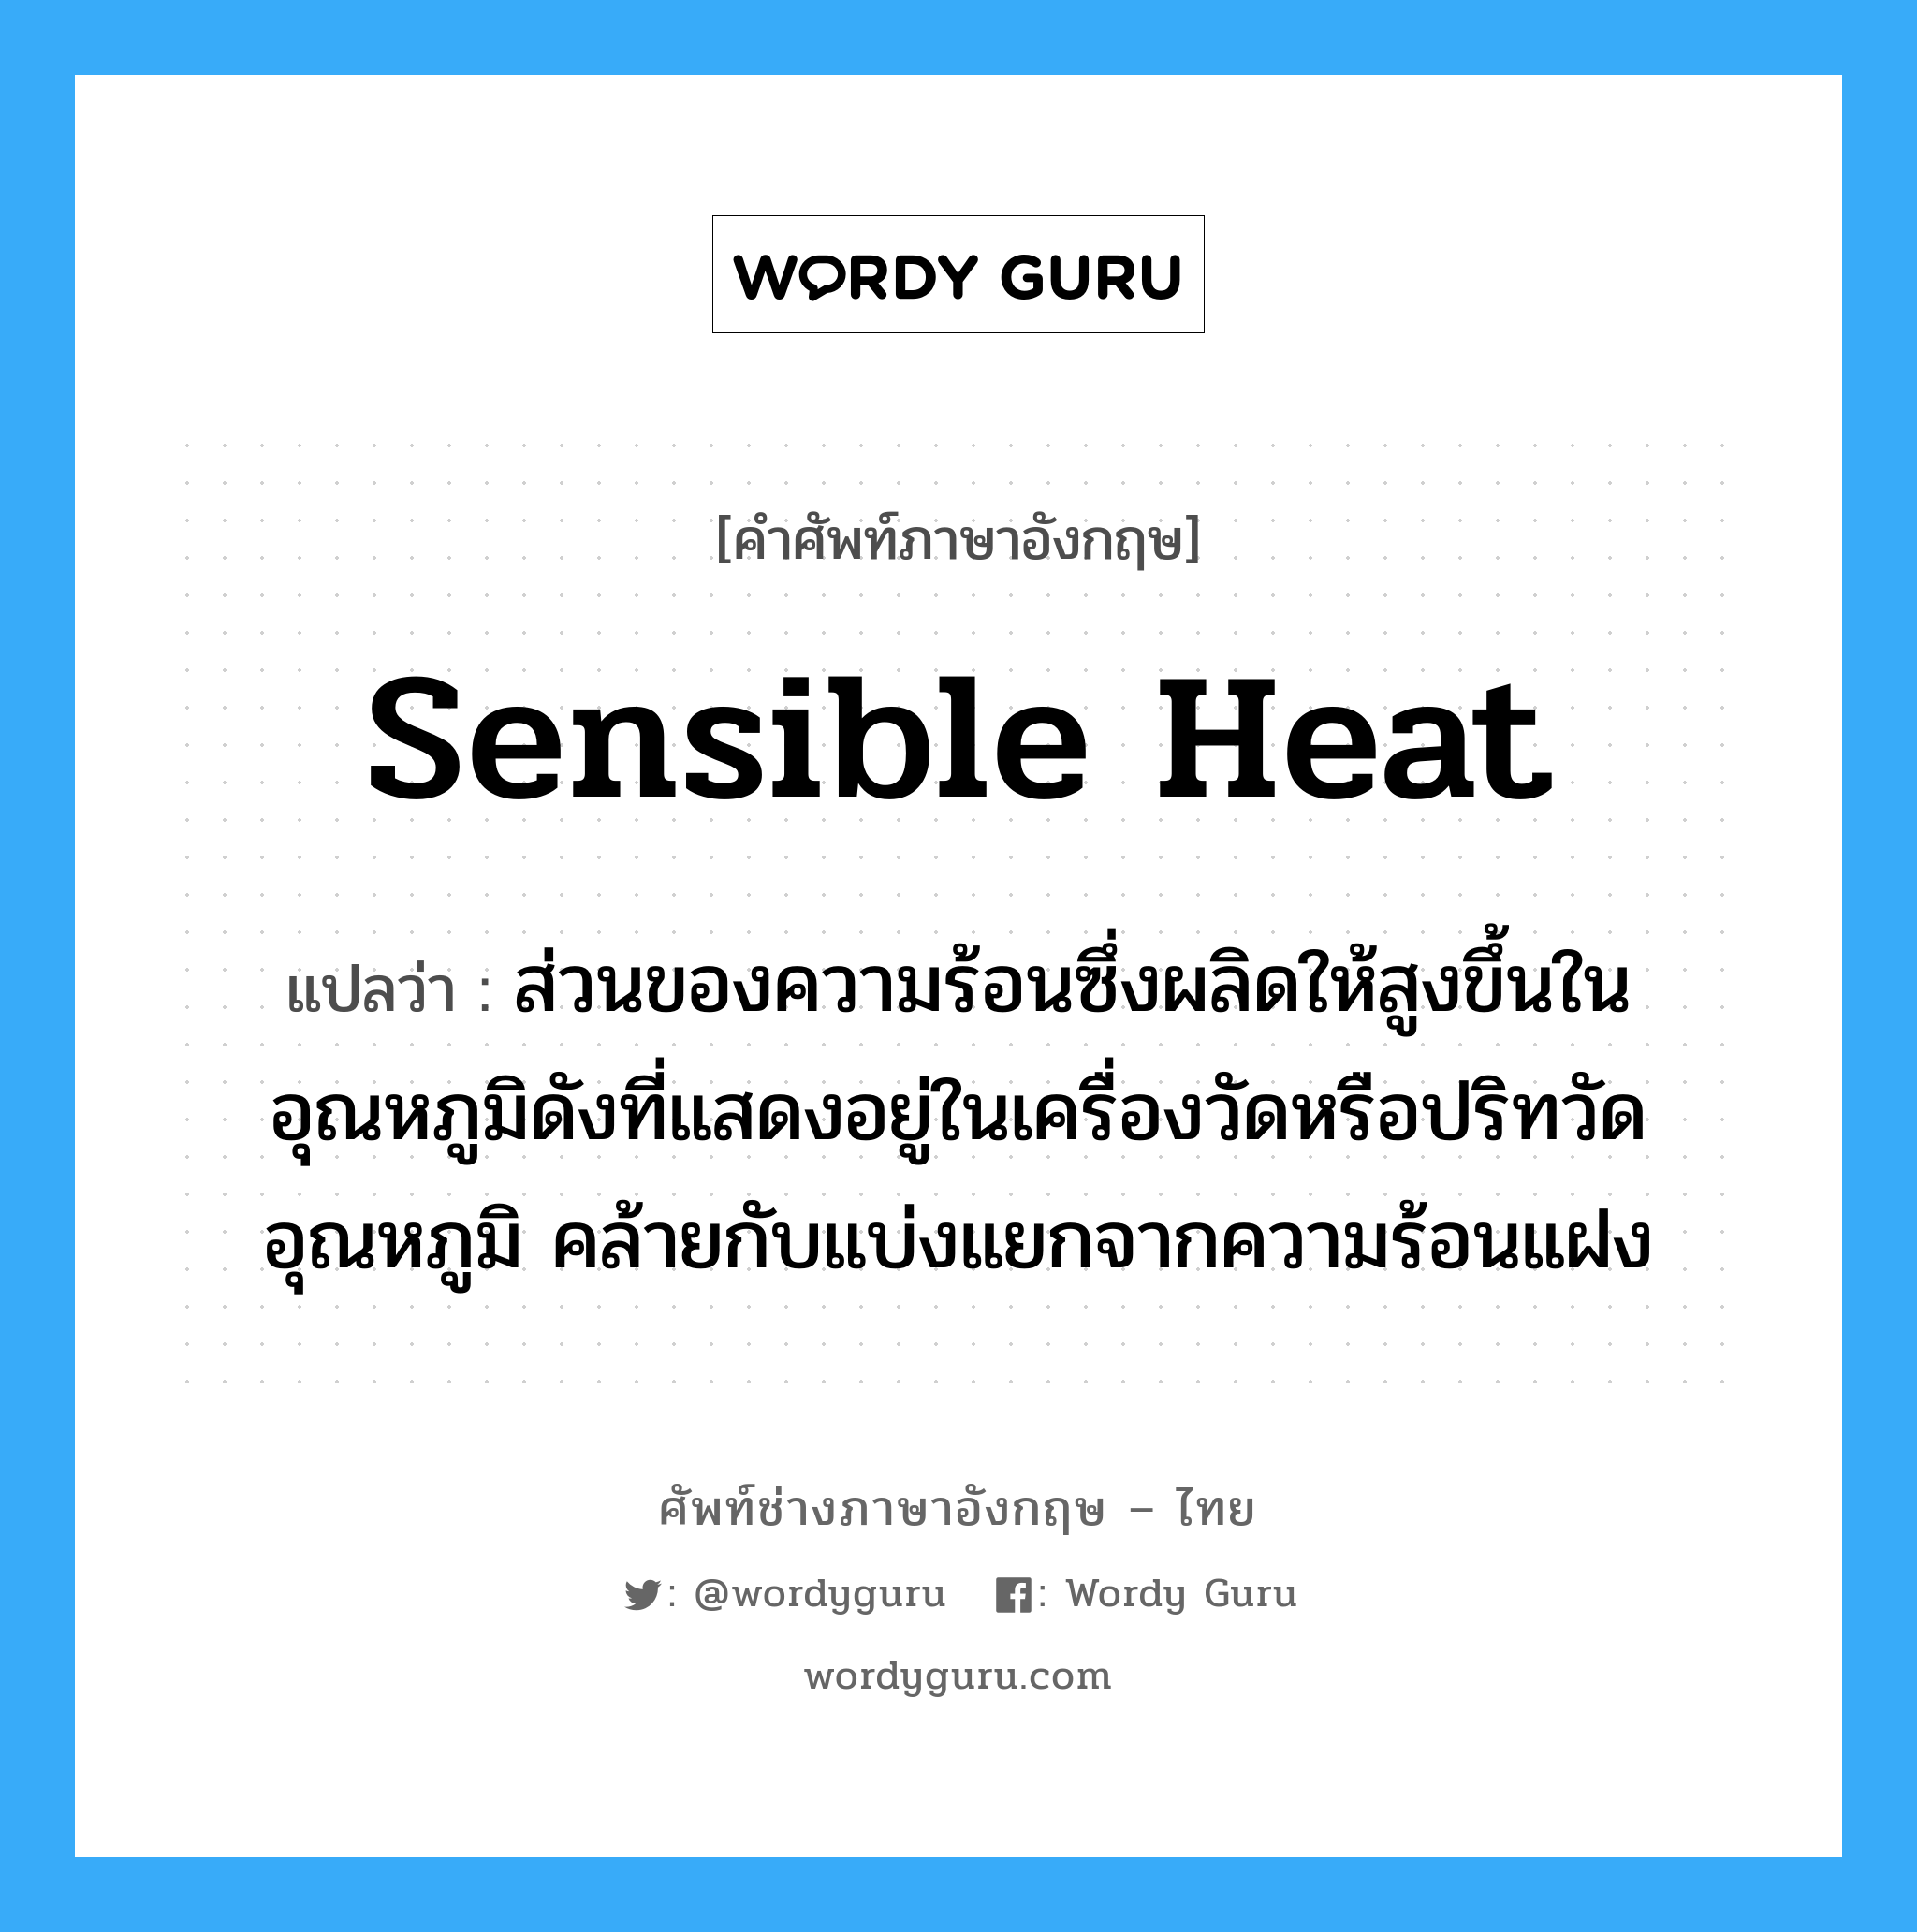 sensible heat แปลว่า?, คำศัพท์ช่างภาษาอังกฤษ - ไทย sensible heat คำศัพท์ภาษาอังกฤษ sensible heat แปลว่า ส่วนของความร้อนซึ่งผลิดให้สูงขึ้นในอุณหภูมิดังที่แสดงอยู่ในเครื่องวัดหรือปริทวัดอุณหภูมิ คล้ายกับแบ่งแยกจากความร้อนแฝง